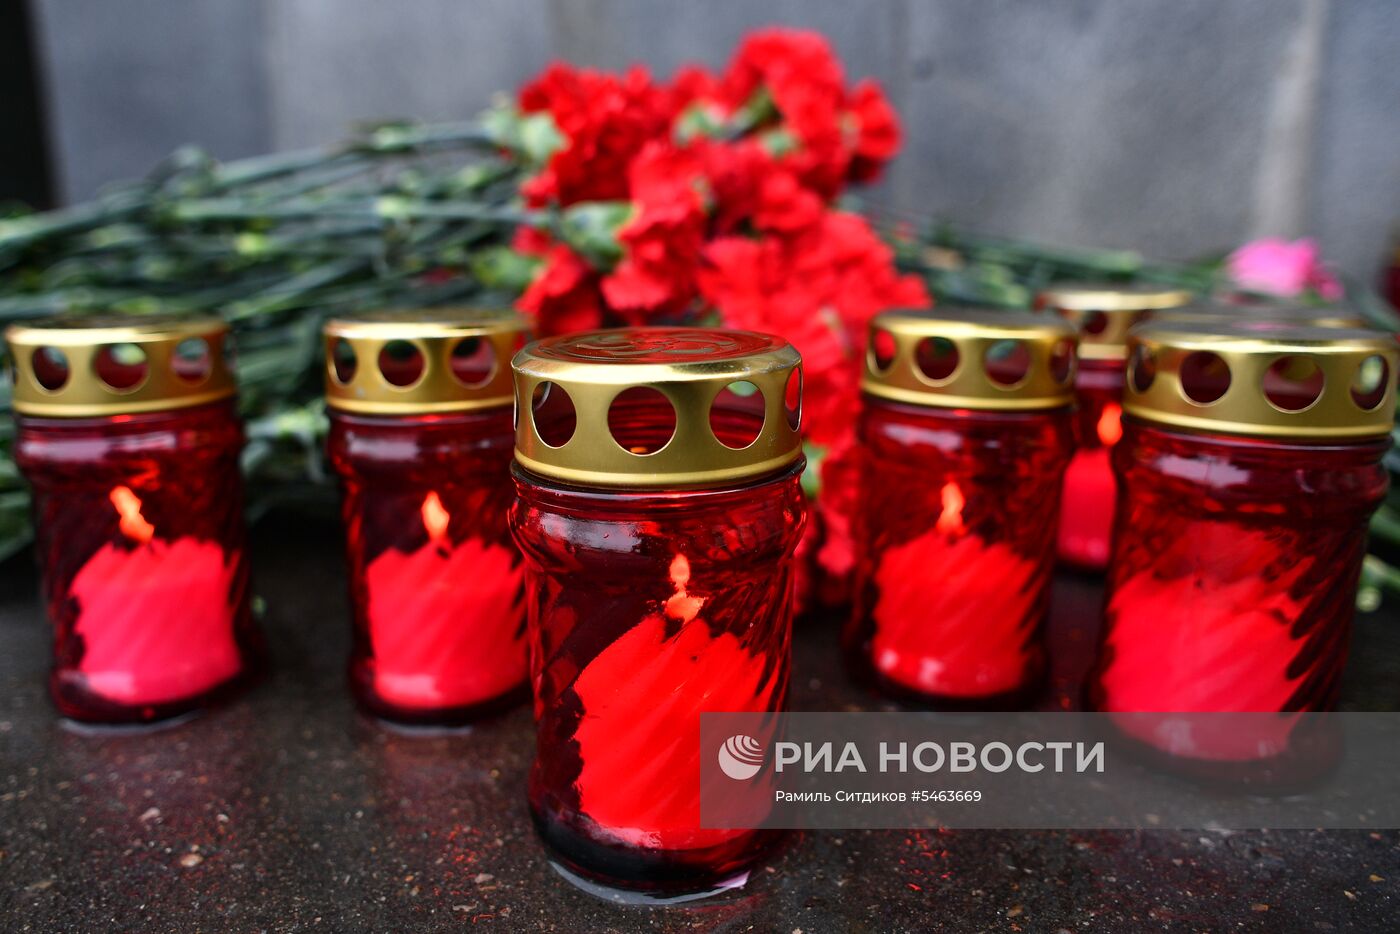 Цветы в память о погибших в ТЦ «Зимняя вишня»